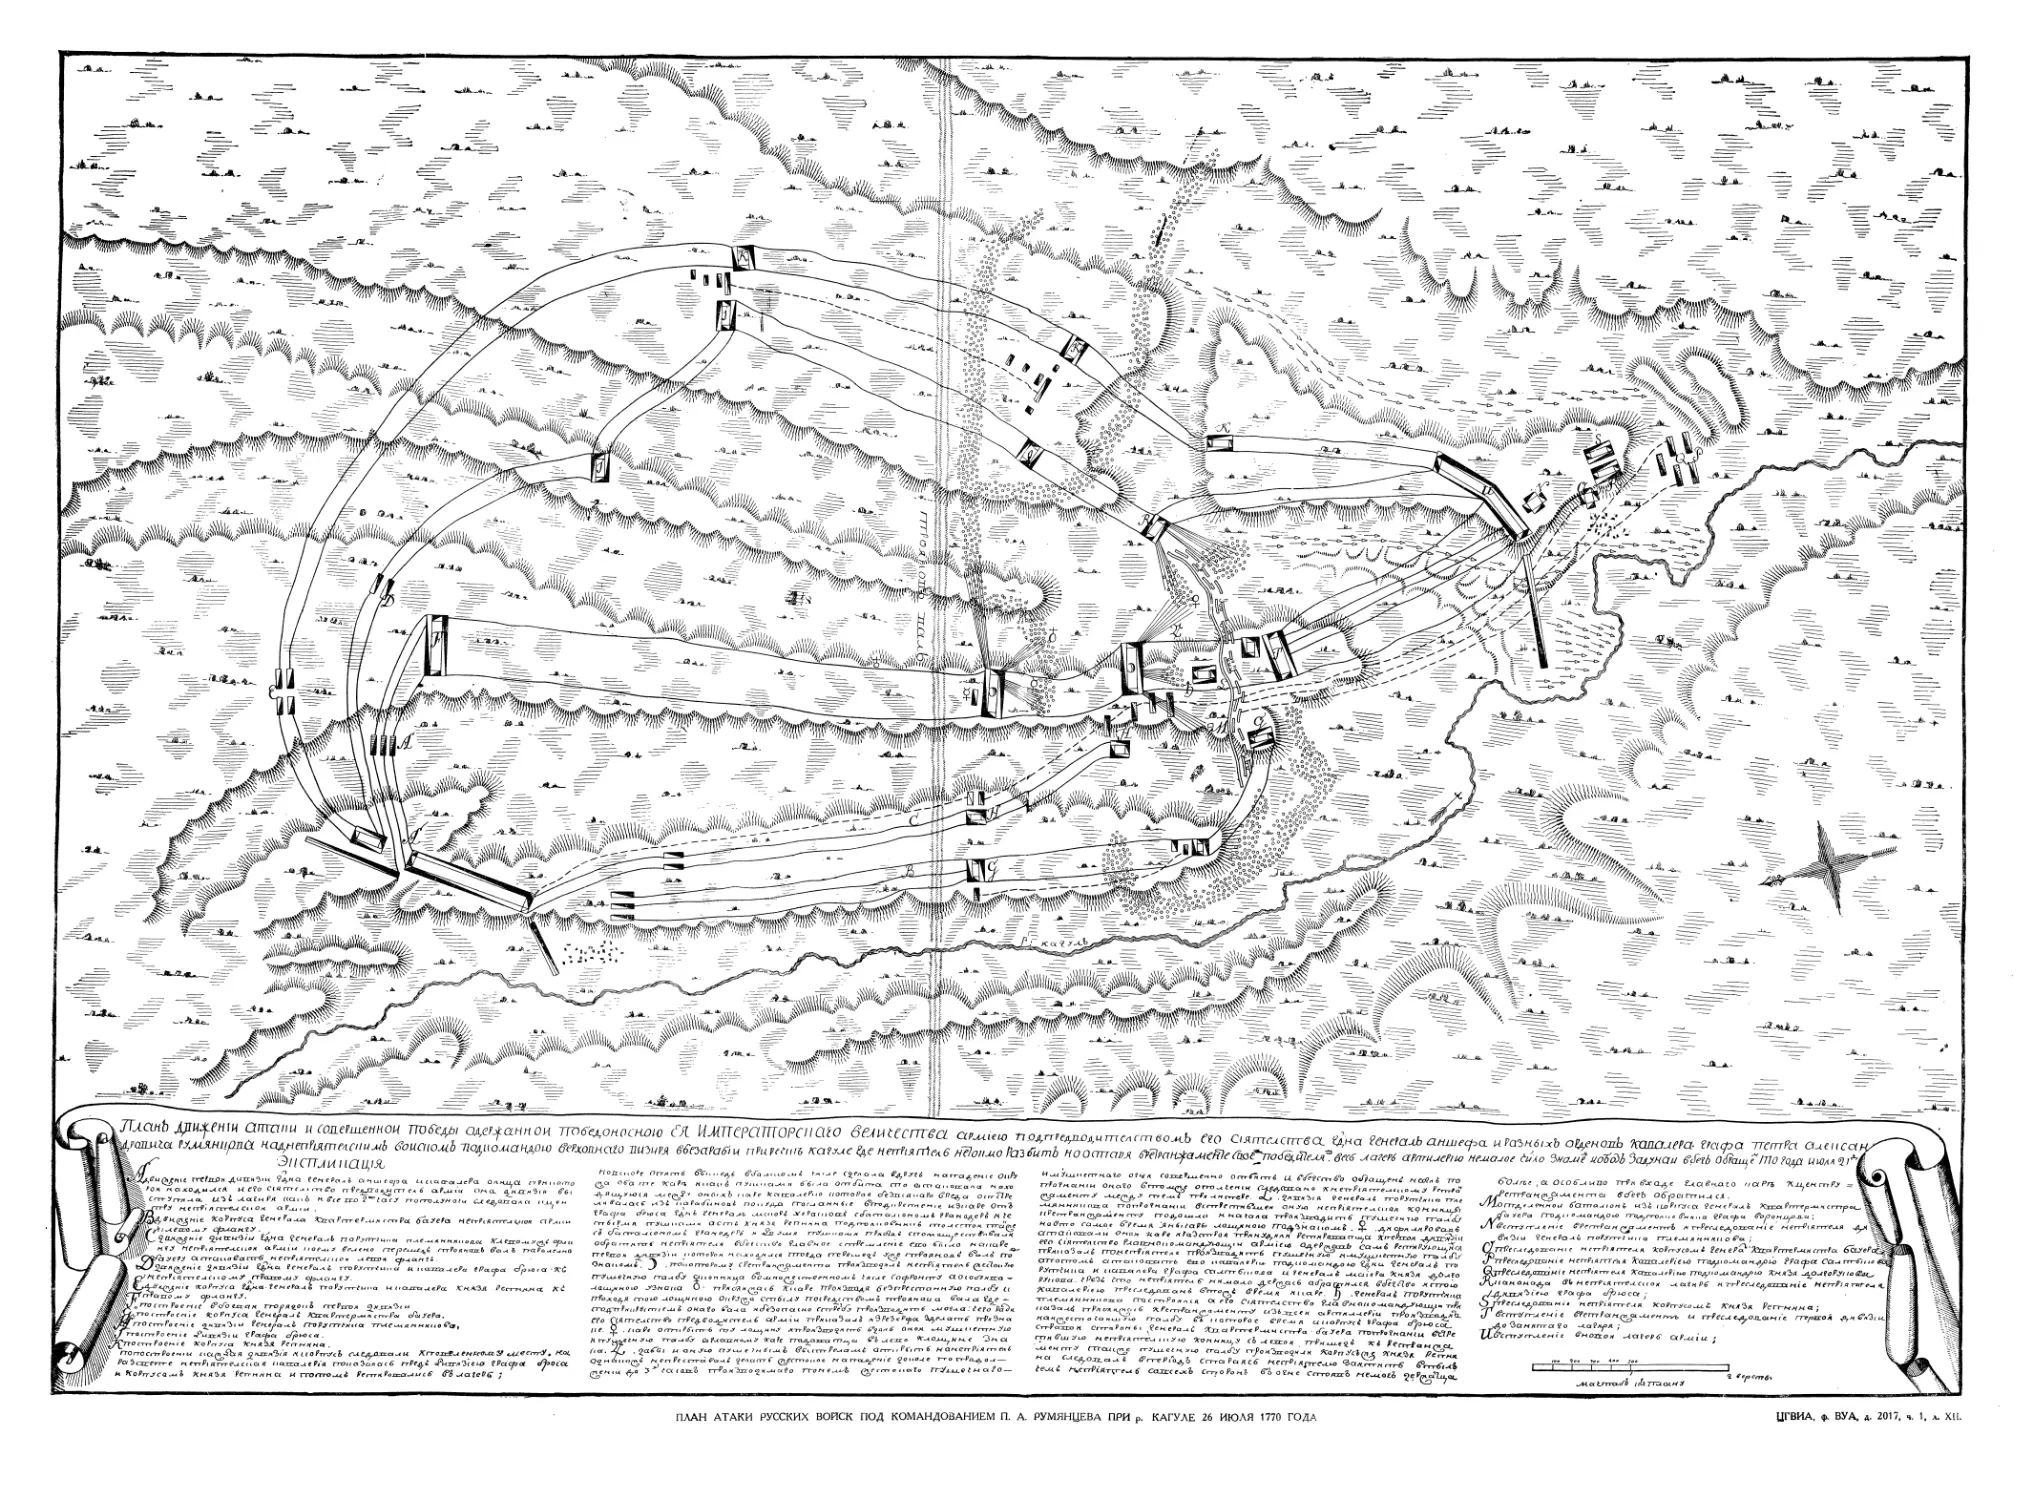 План атаки русских войск под командованием П. А. Румянцева при р. Кагуле 26 июля 1770 года